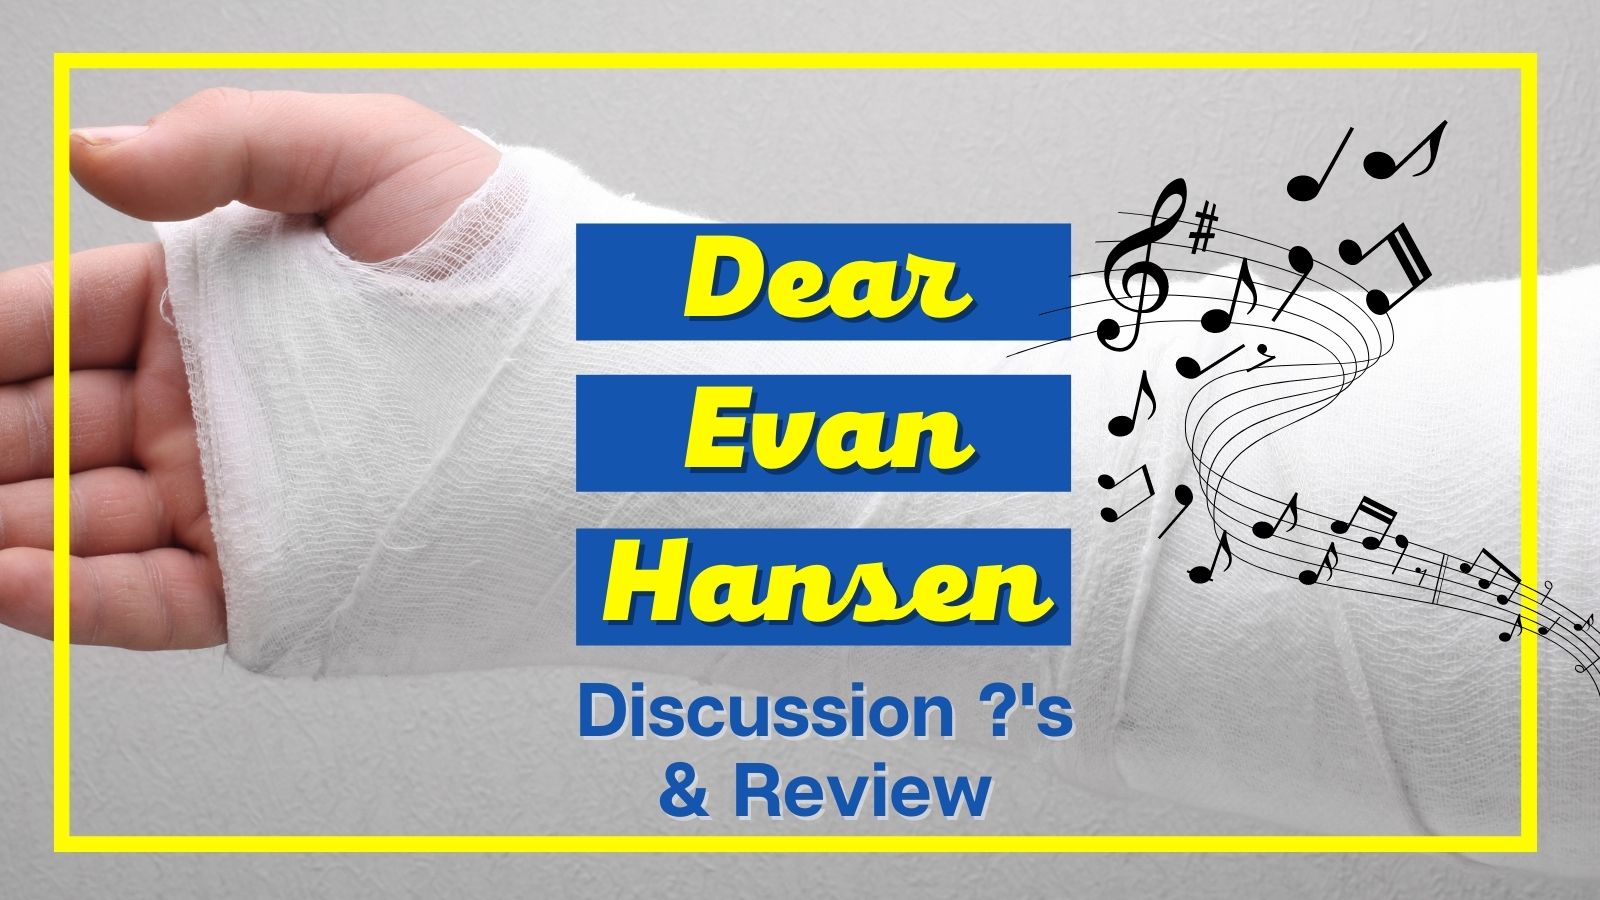 Dear Evan Hansen Parent Review, Quotes, Discussion Questions